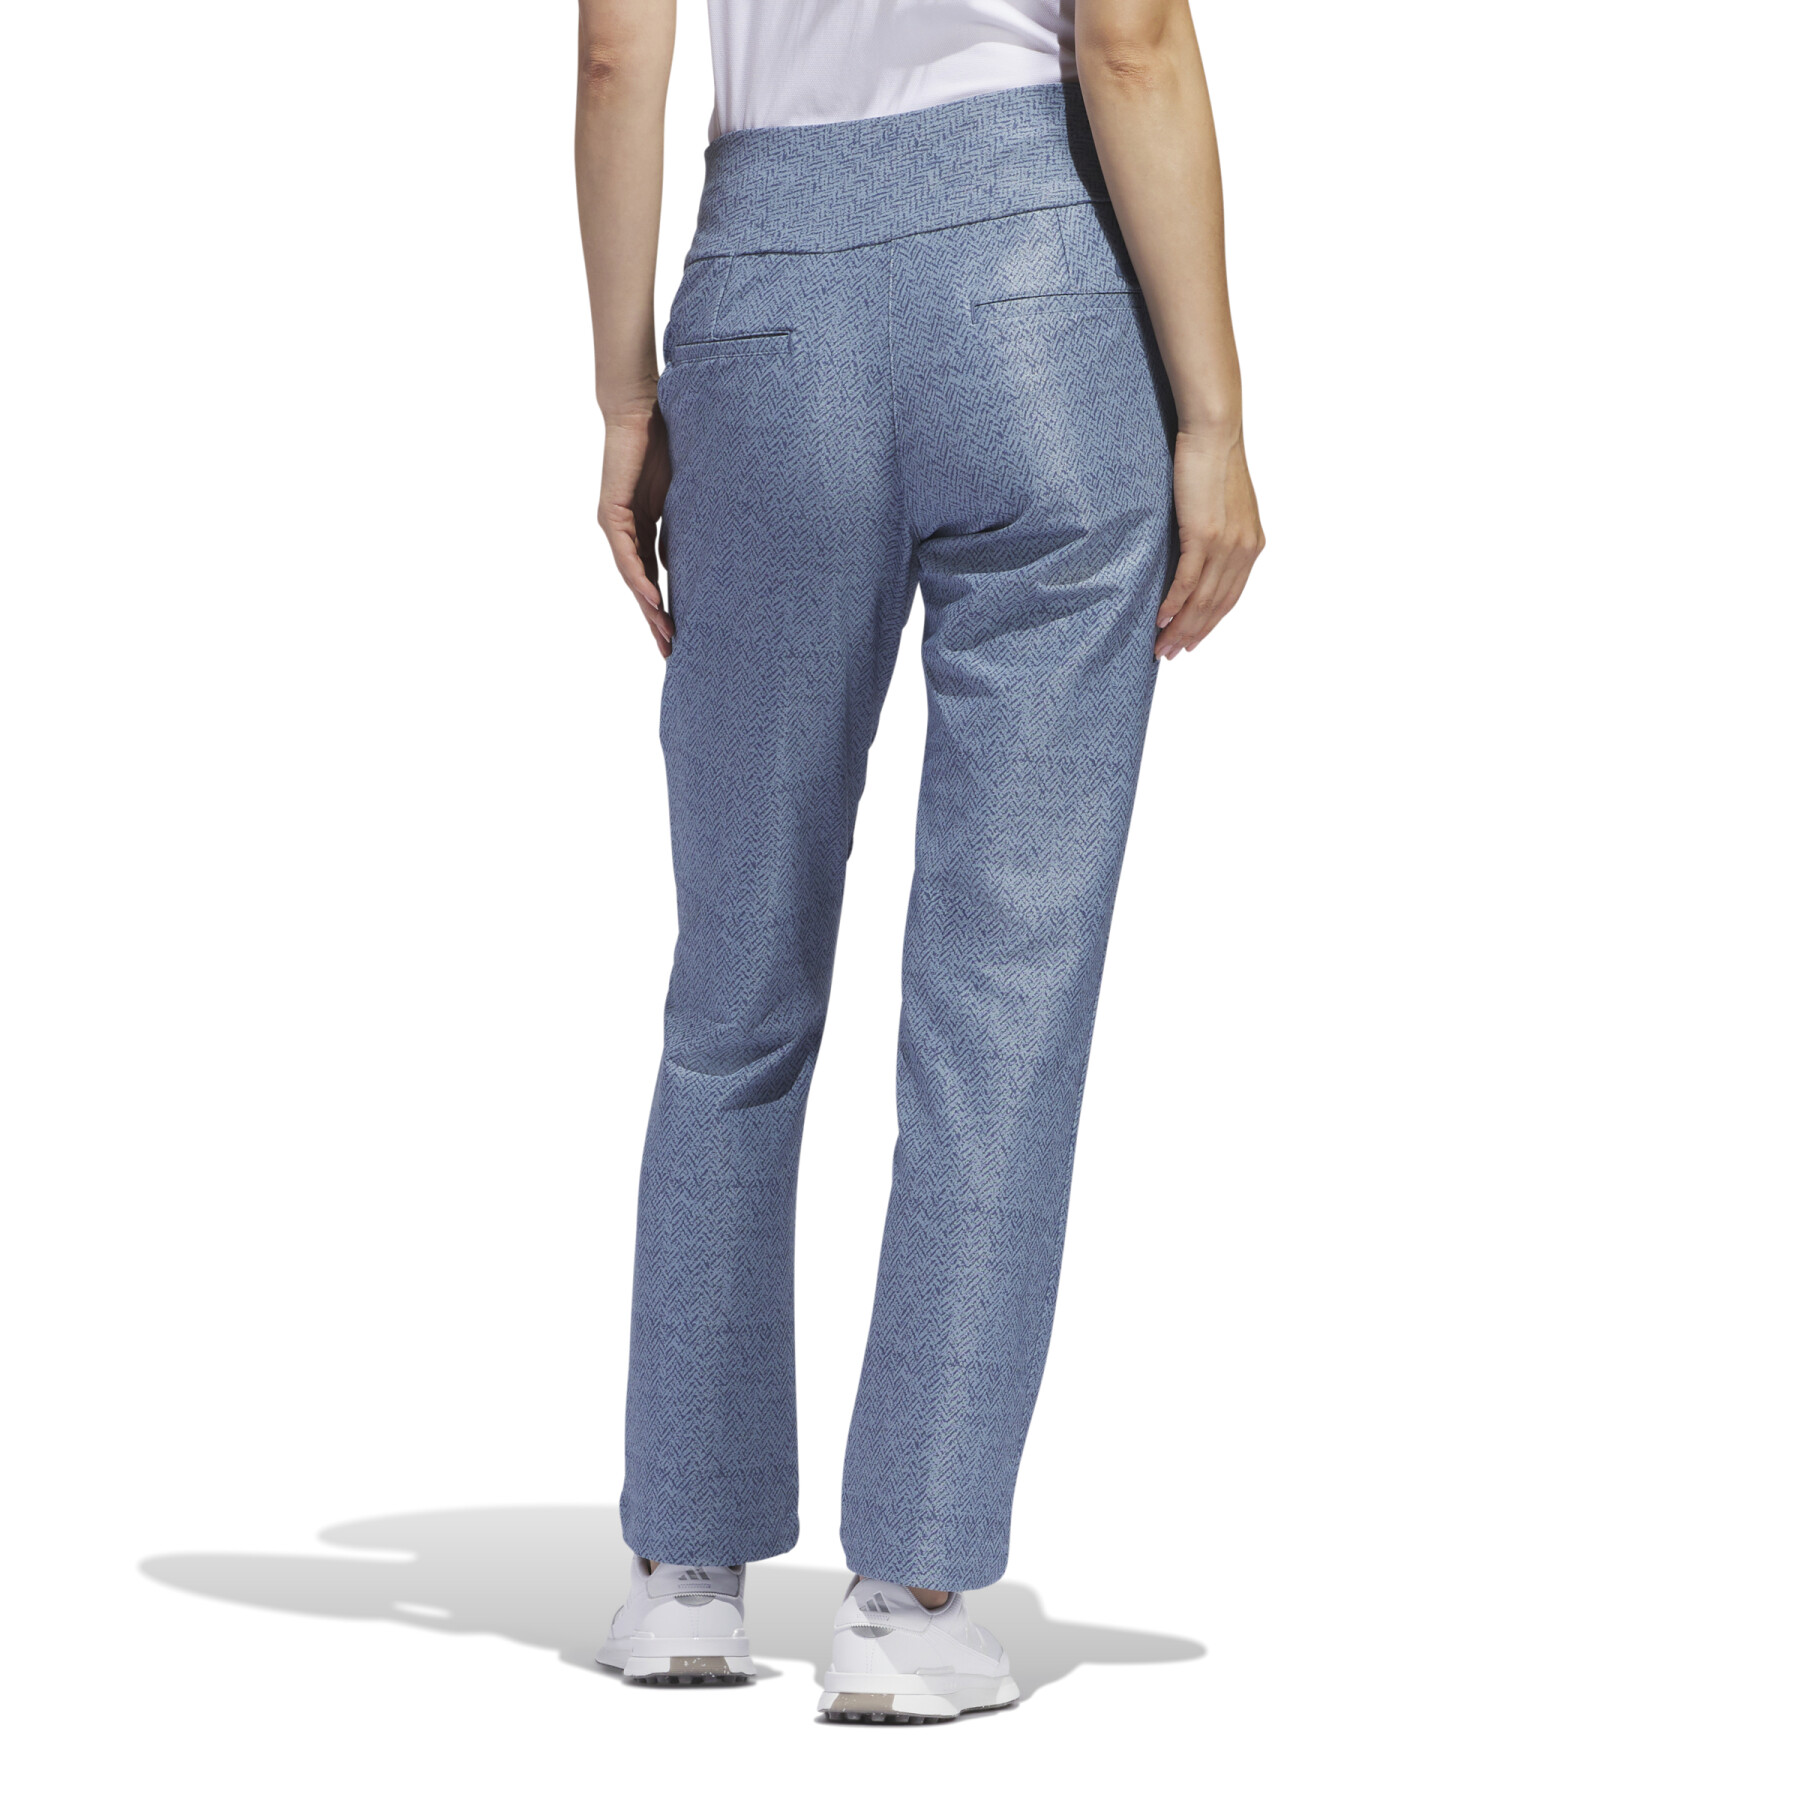 Pantalon imprimé femme adidas Ultimate365